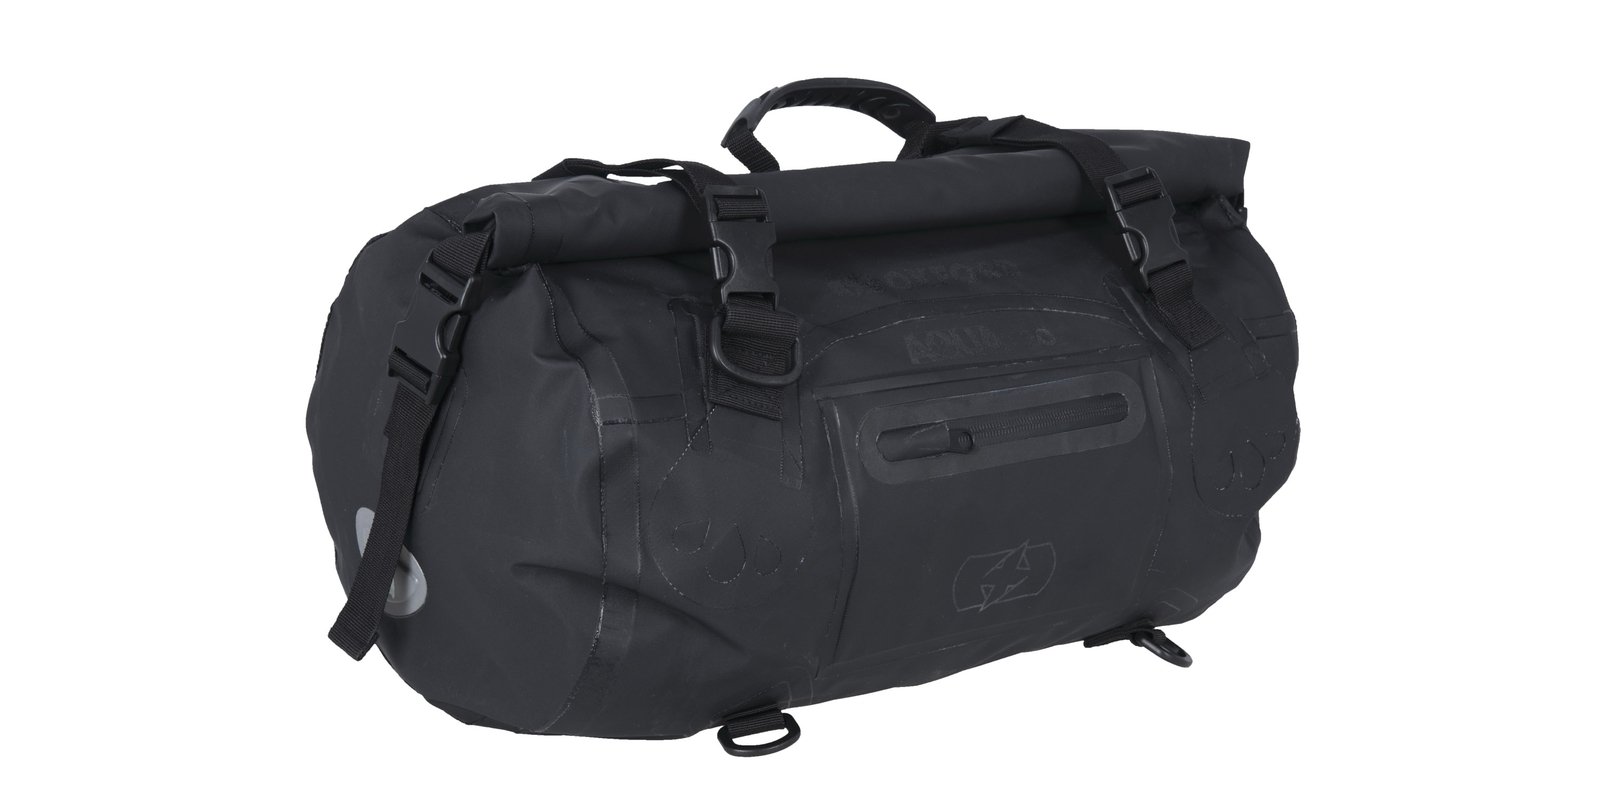 Obrázek produktu OXFORD Aqua T-30 Roll Bag Black 30L OL451